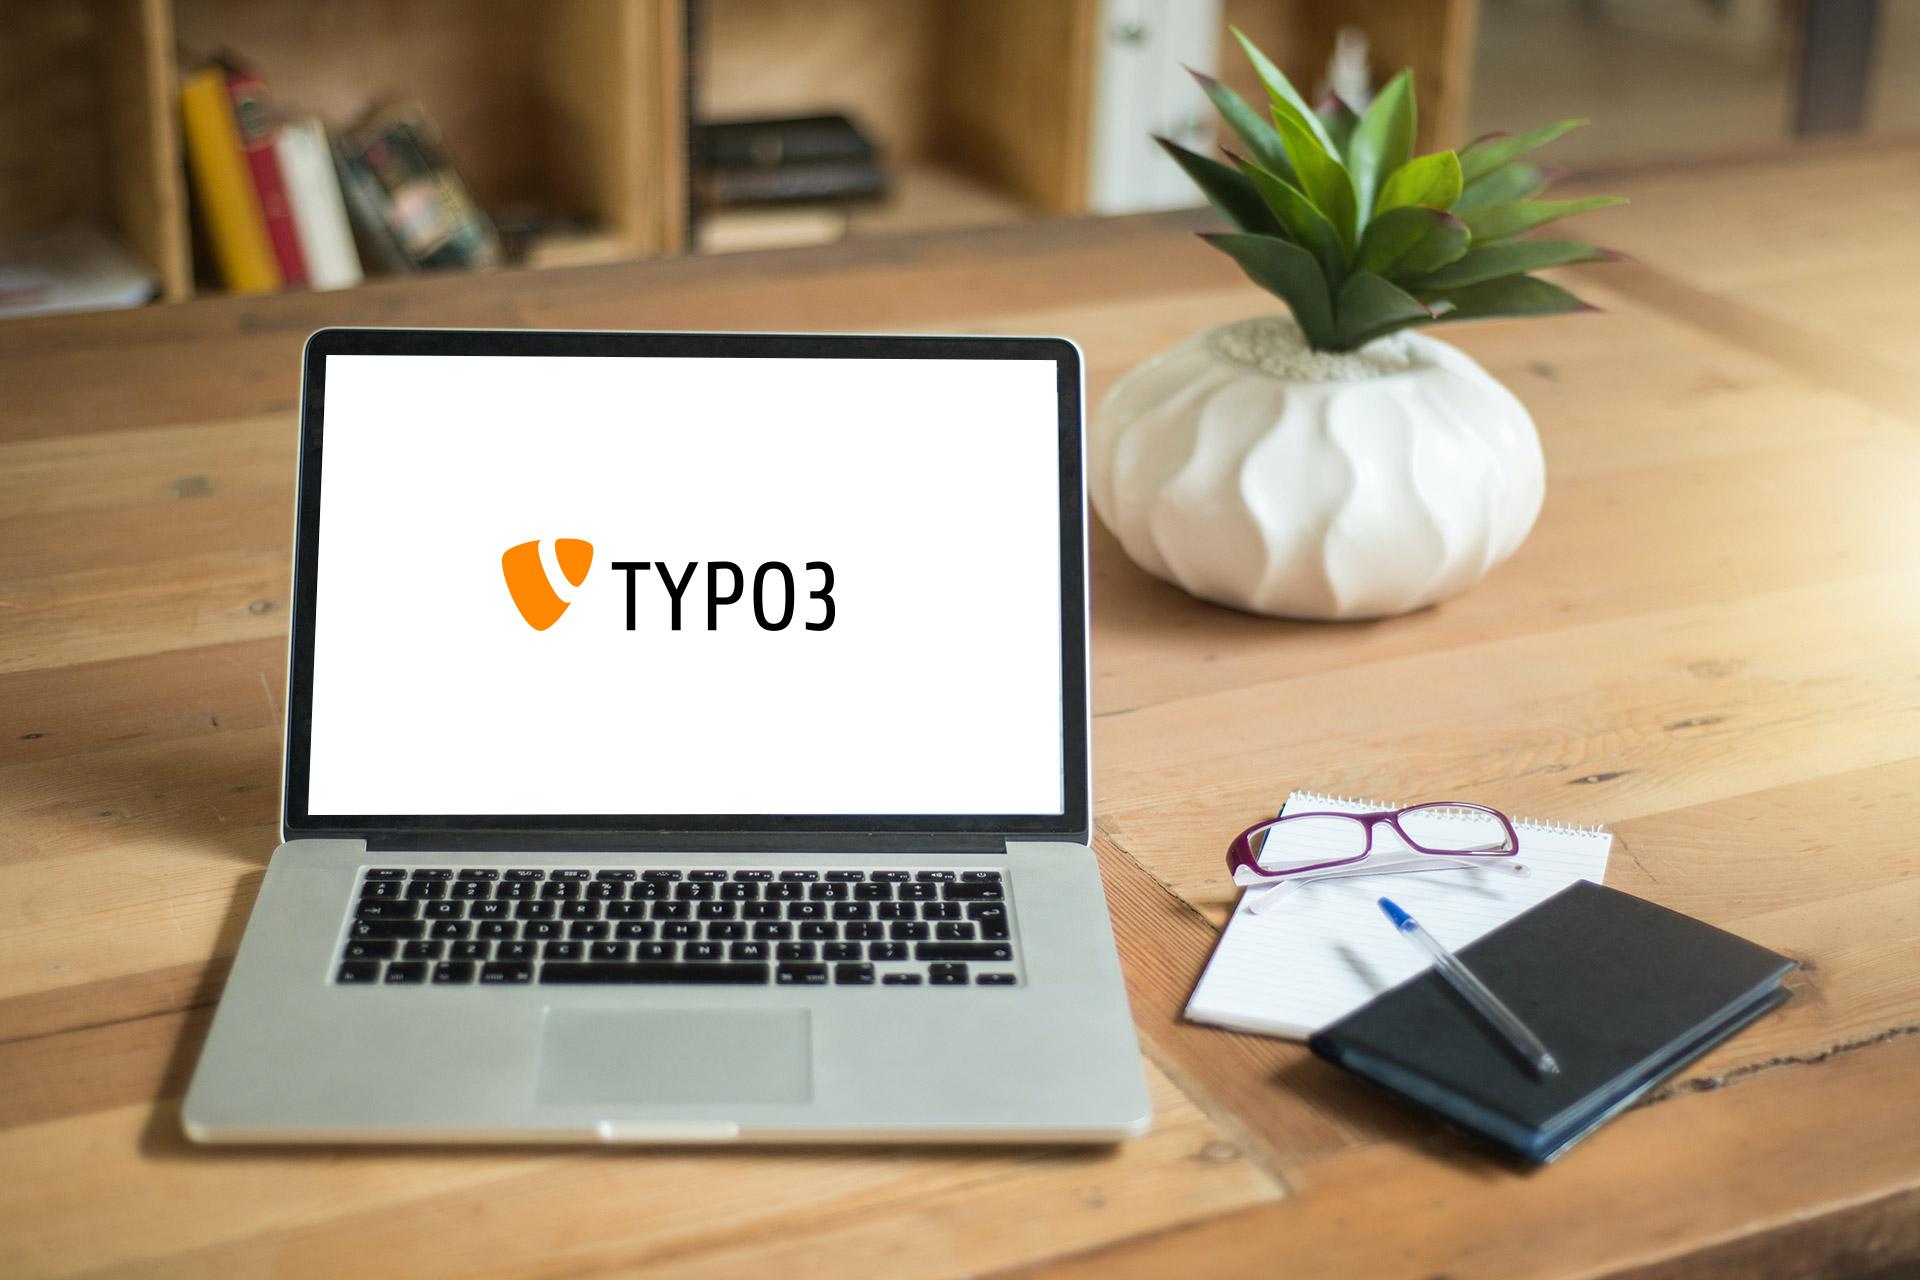 Laptop mit TYPO3 auf dem Bildschirm